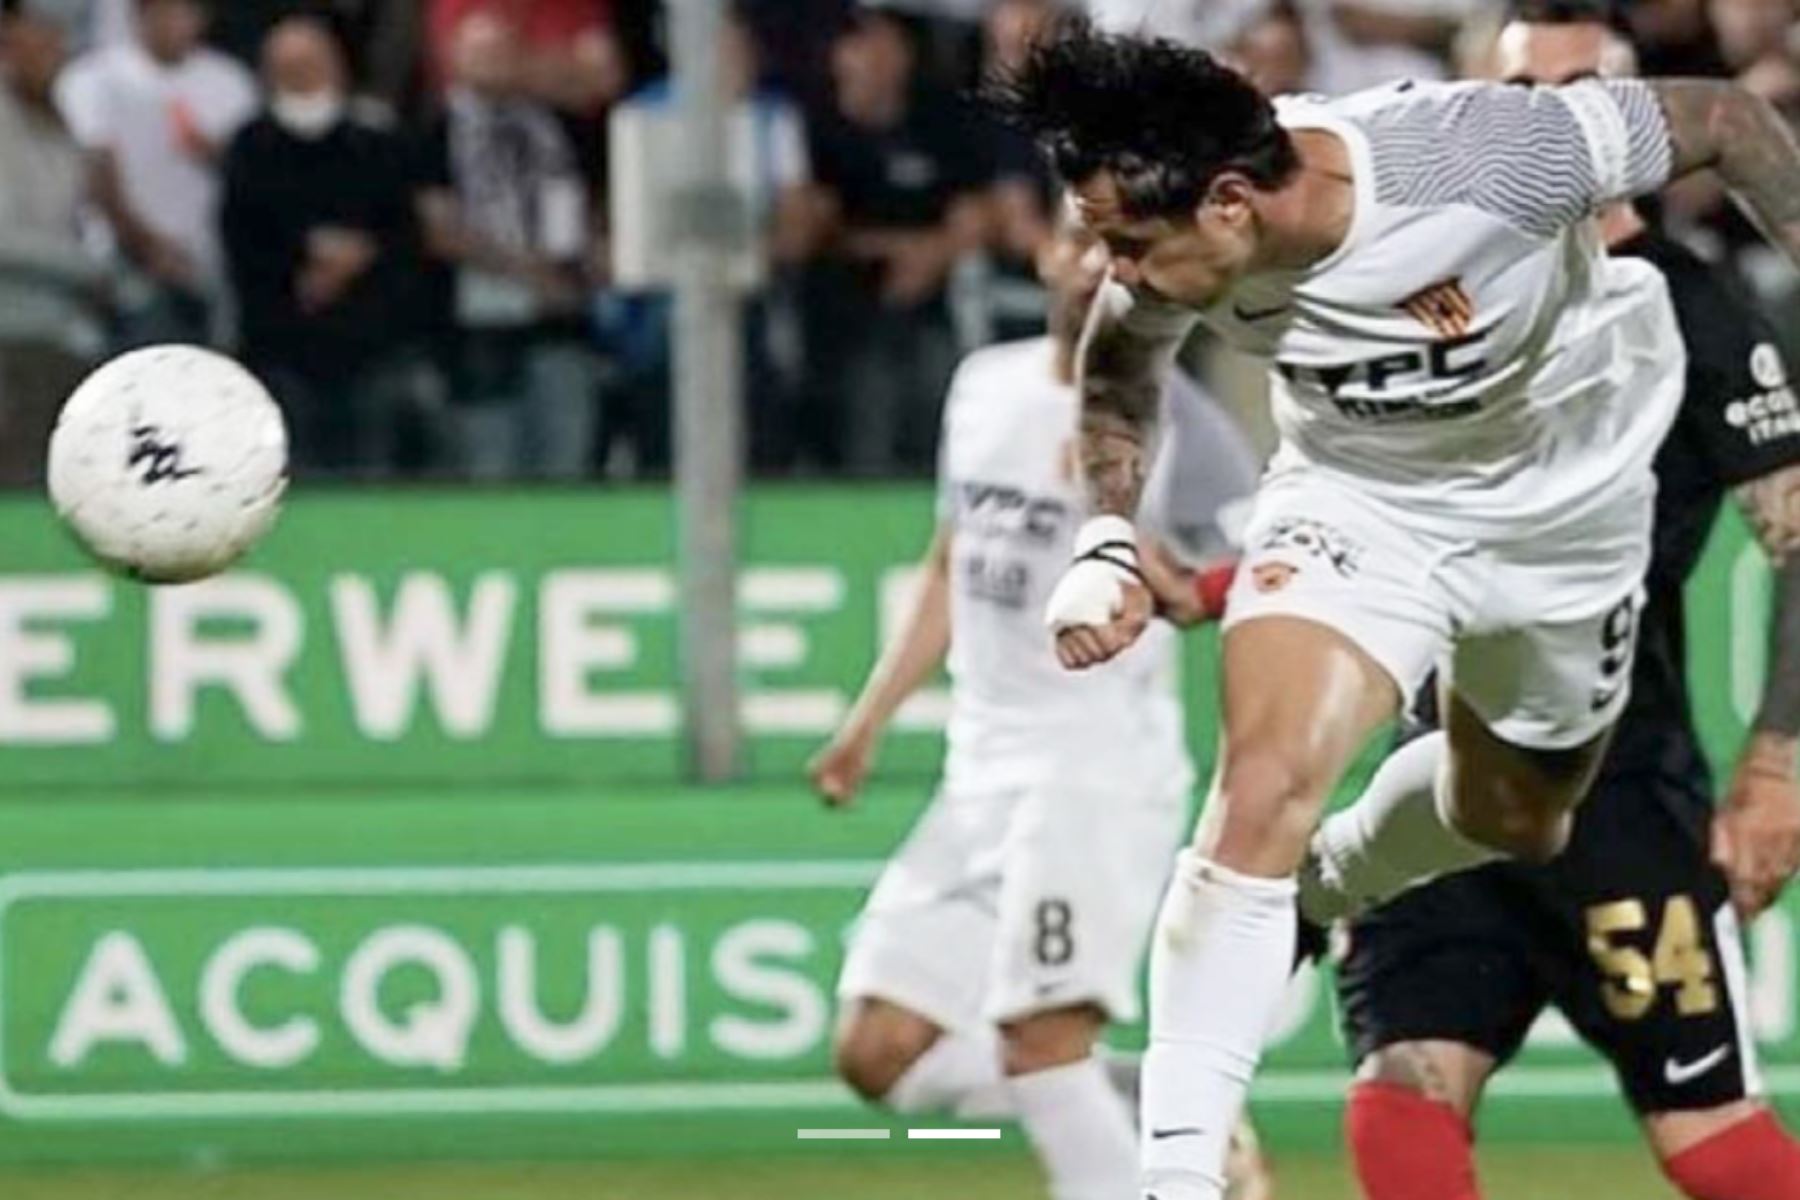 Con la mecha encendida: Lapadula marca con el Benevento, su segundo gol en dos partidos consecutivos. Foto: Internet